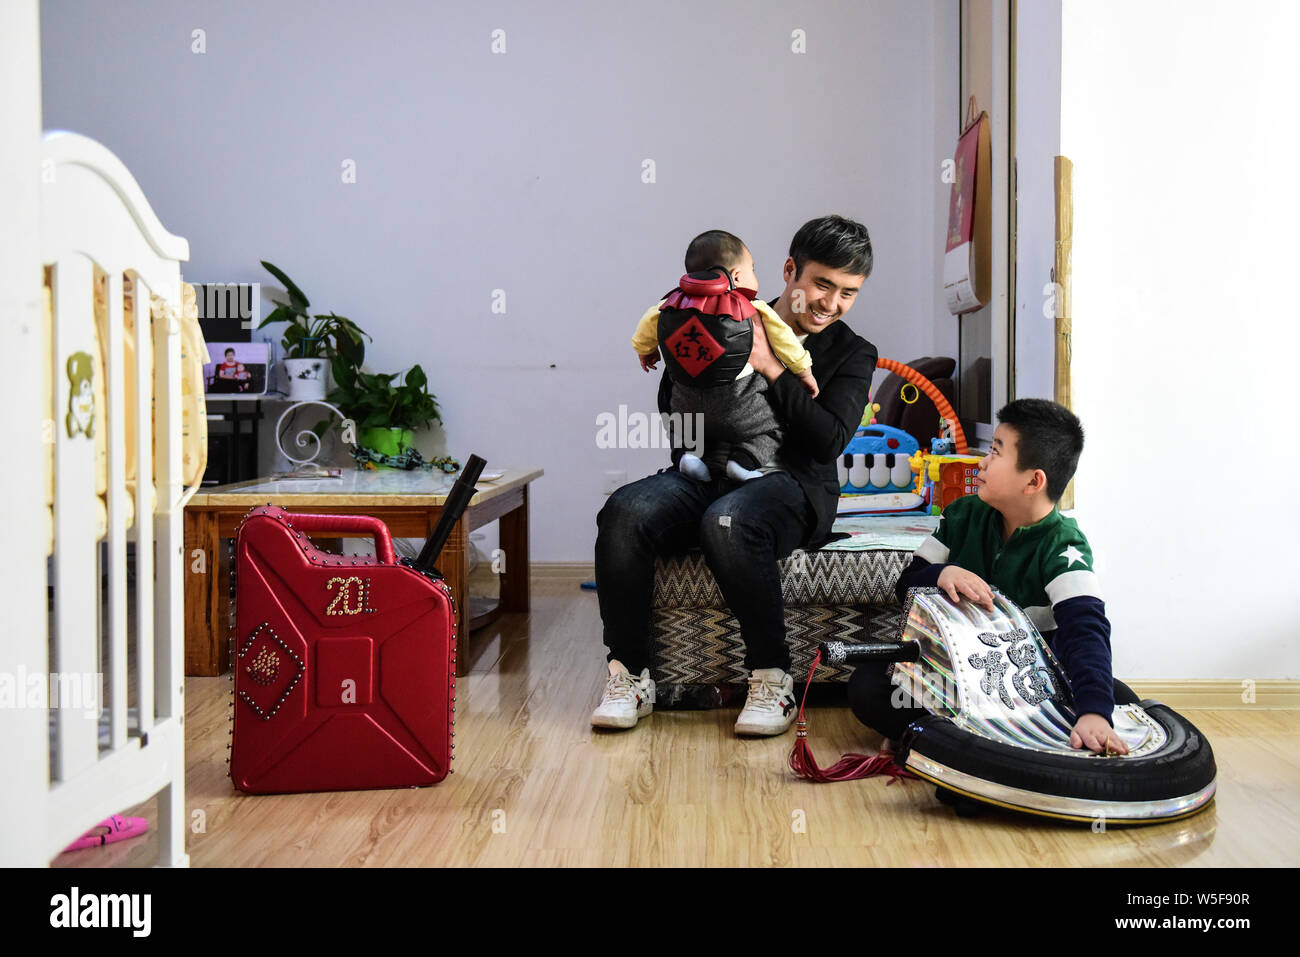 36-Jahre alten Chinesischen leder Handwerker Zhang Renbing und seine Kinder posieren mit Produkte aus Leder mit Form der Schwerter und Betankung Schaufel von ihm gemacht Stockfoto